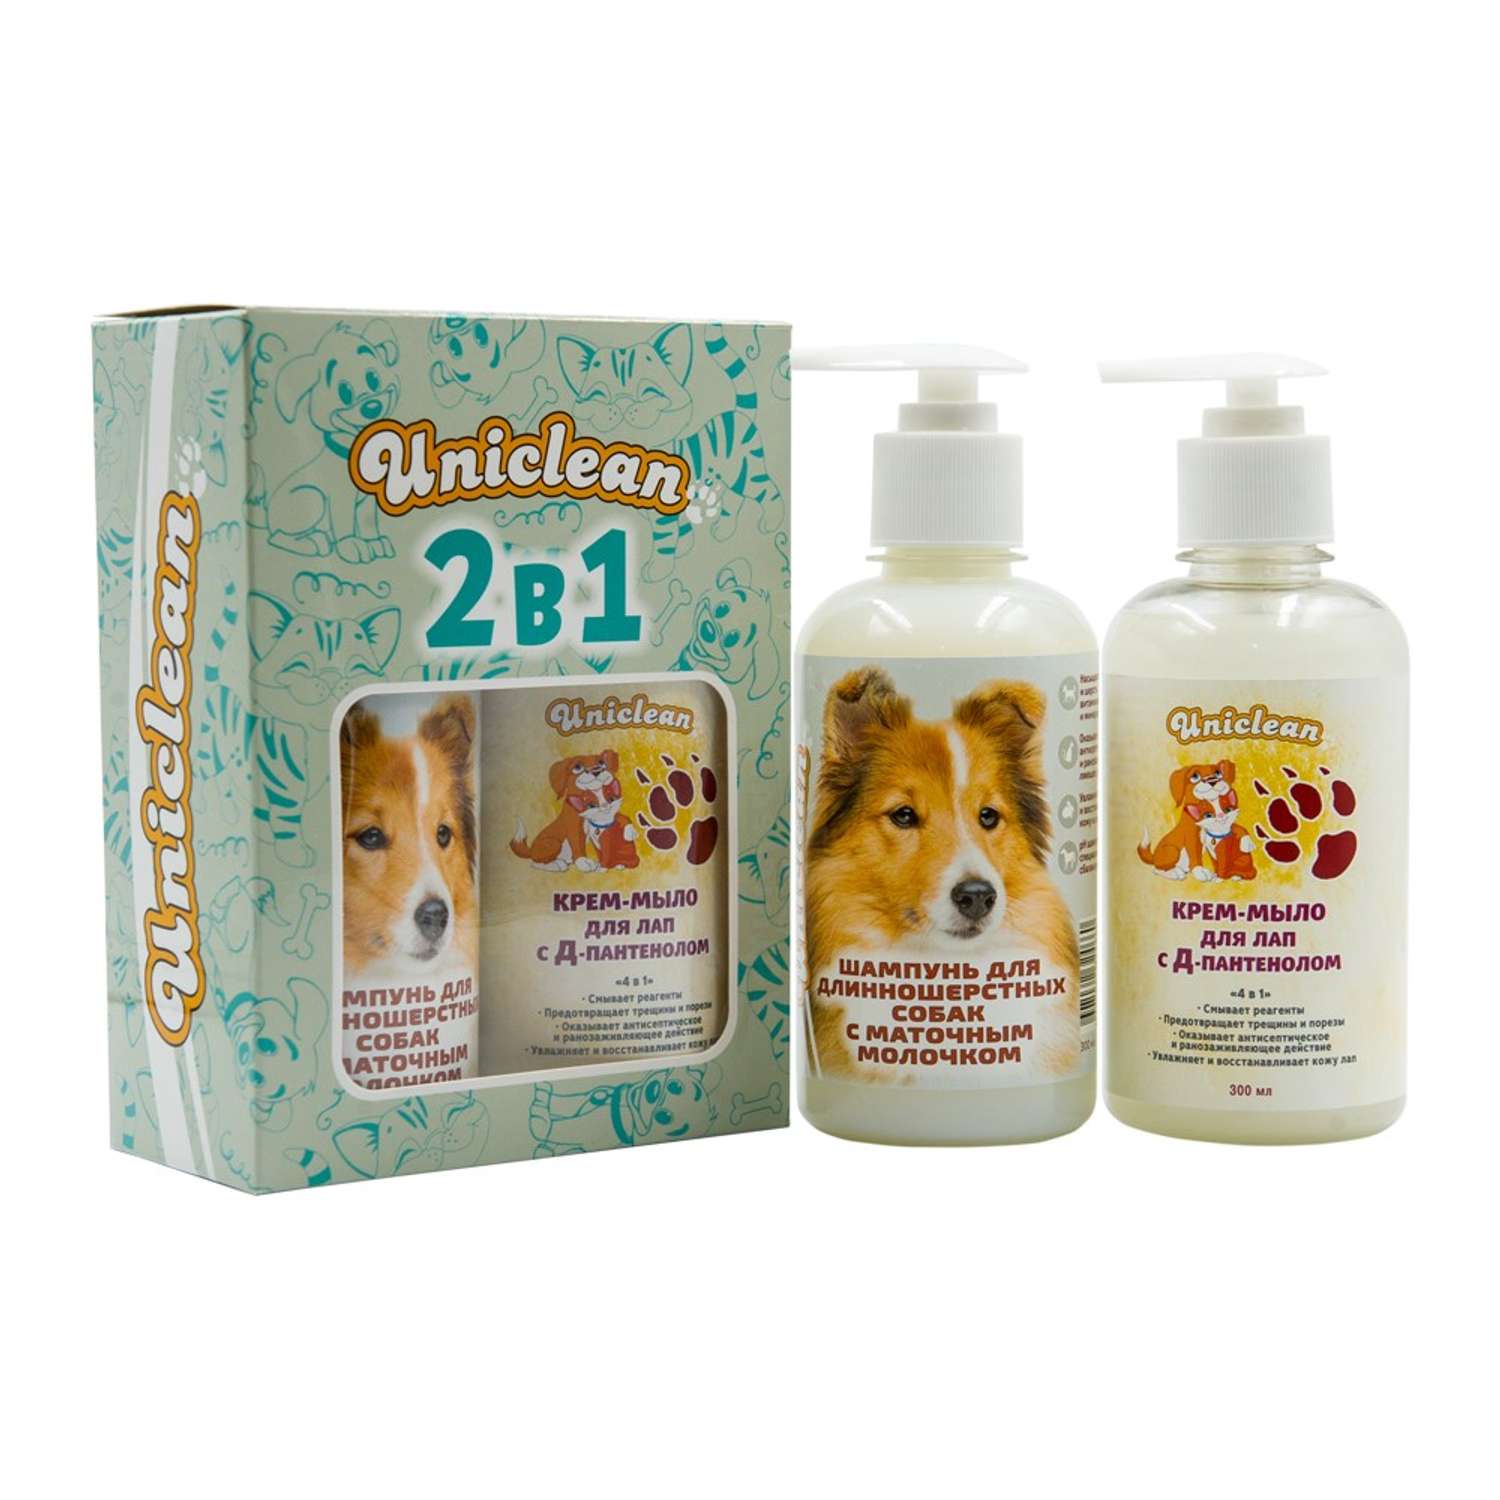 Подарочный набор Uniclean шампунь для длинношерстных собак с маточным молочком и крем-мыло для лап с д-пантенолом - фото 2